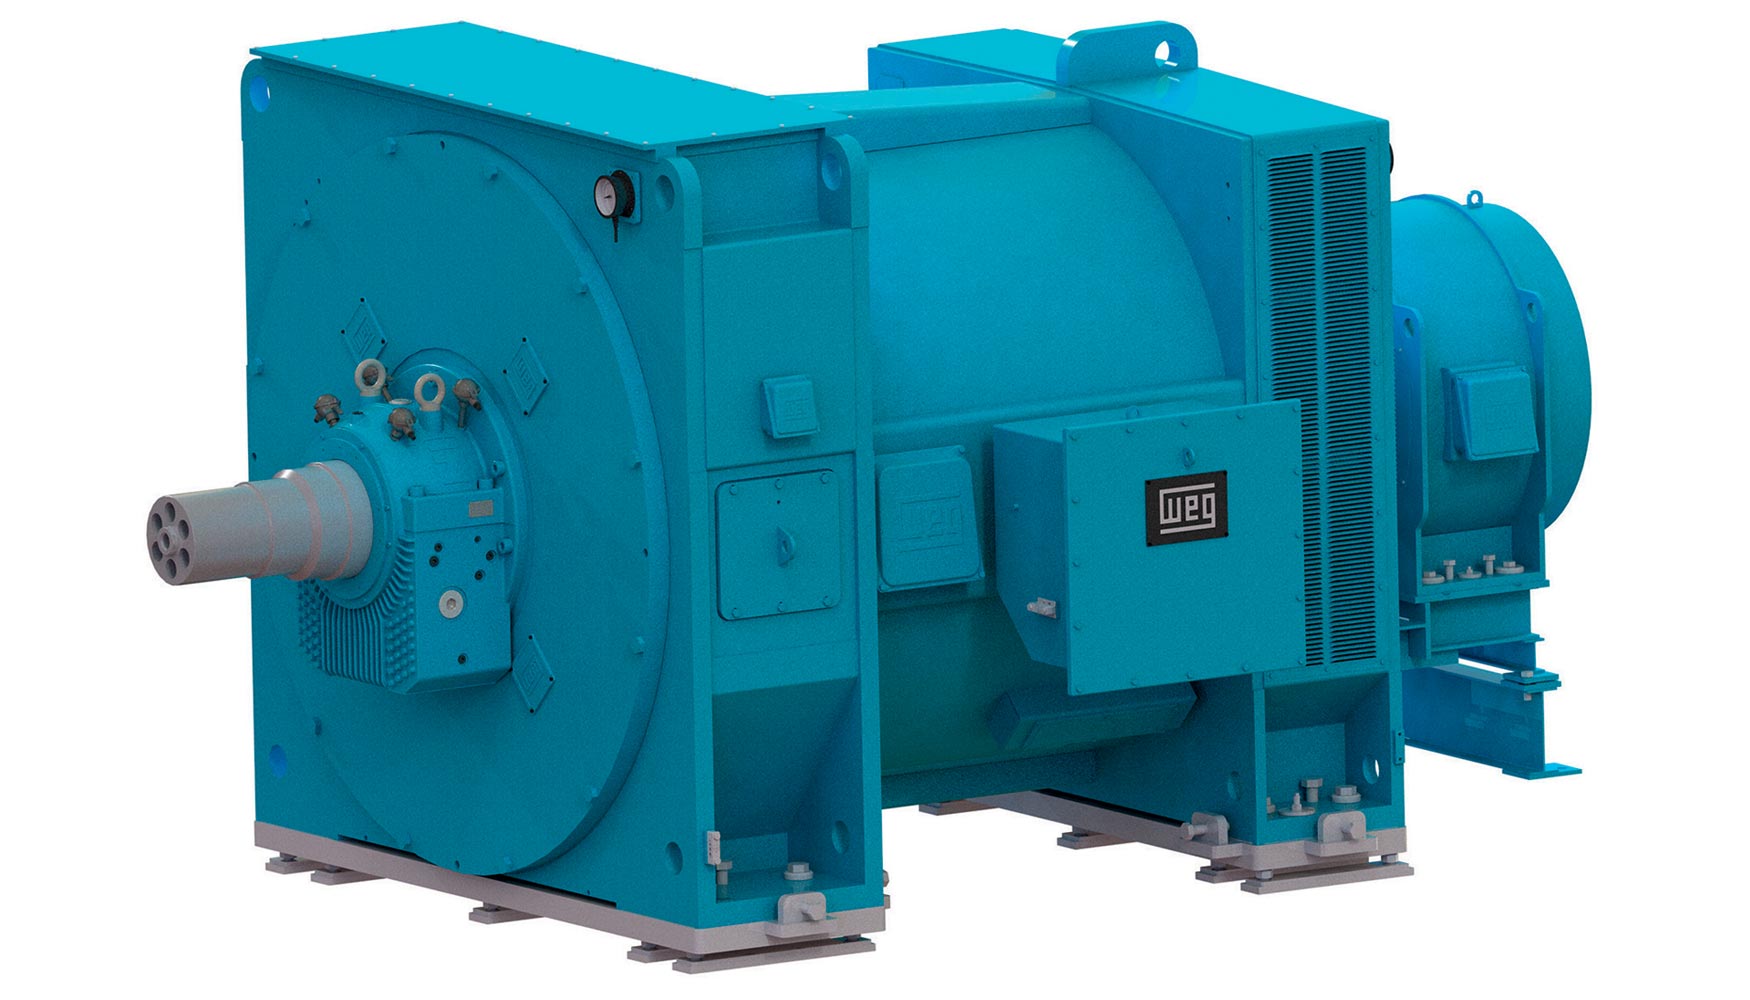 Los generadores robustos y compactos de la serie SH11 estn diseados para turbinas de agua con cargas e inercias relativamente altas...